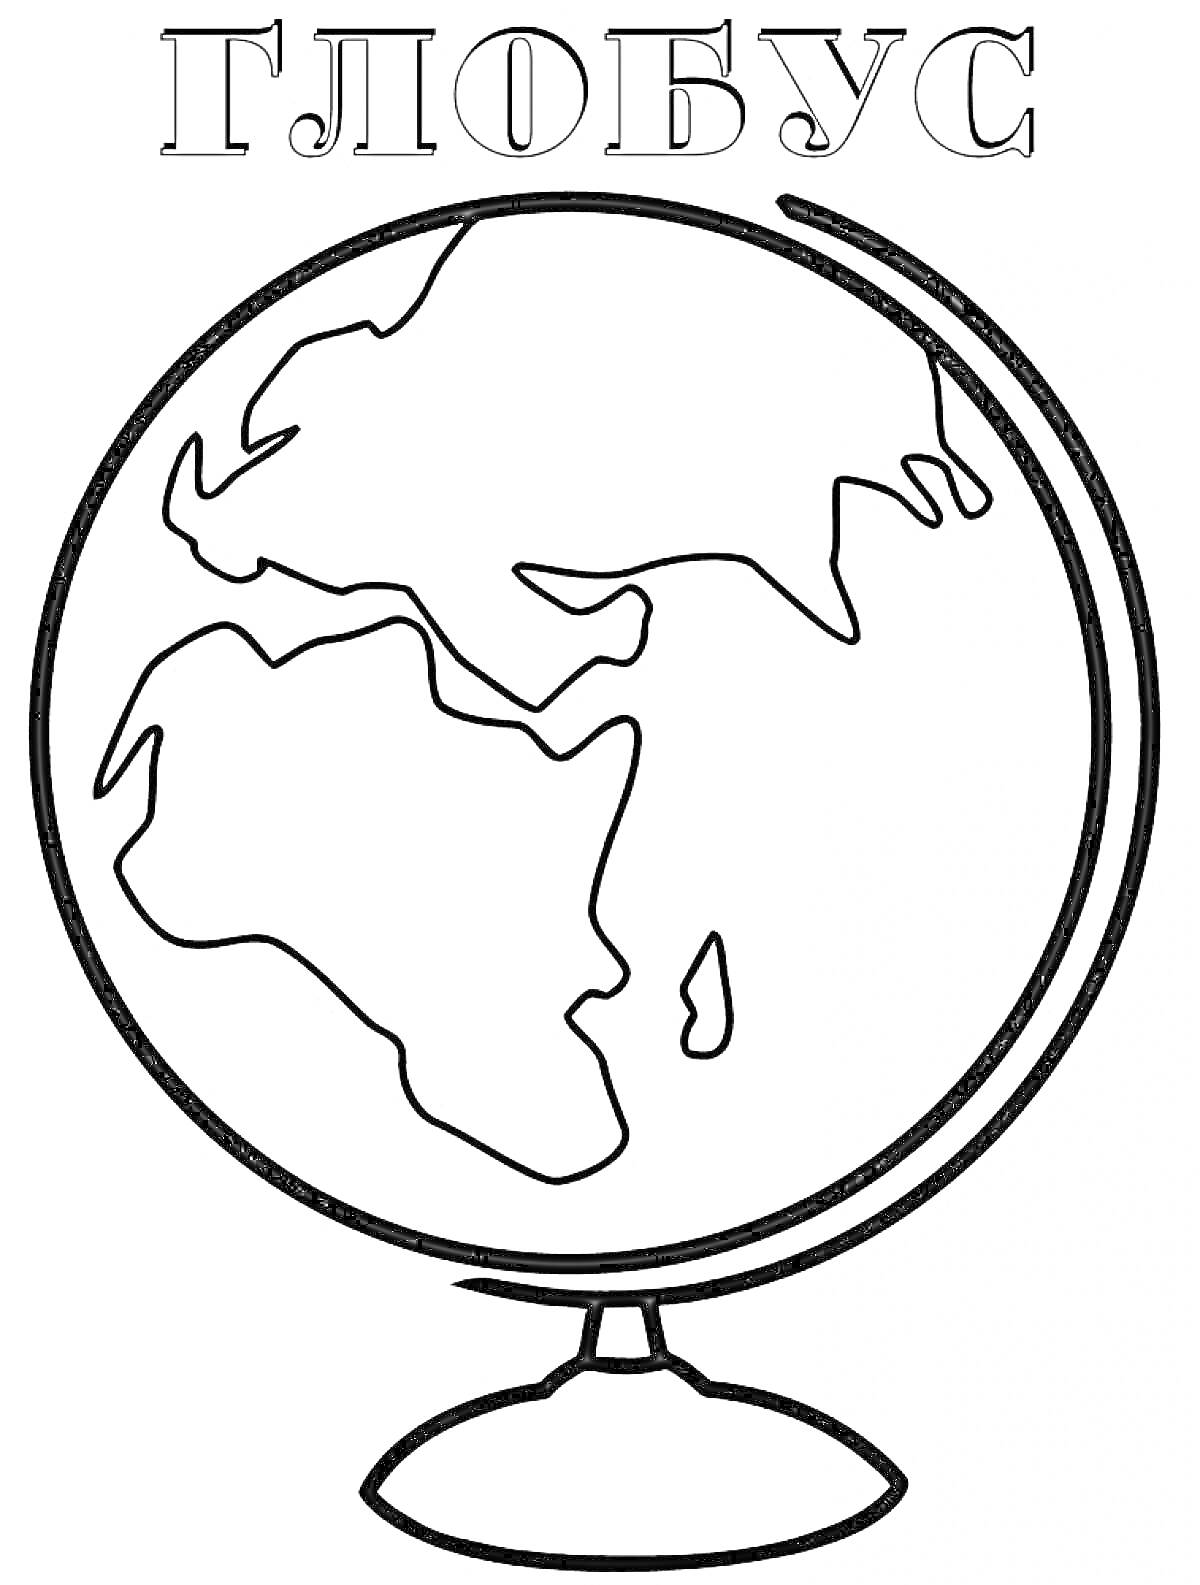 Раскраска Глобус с изображением контуров континентов и подставкой